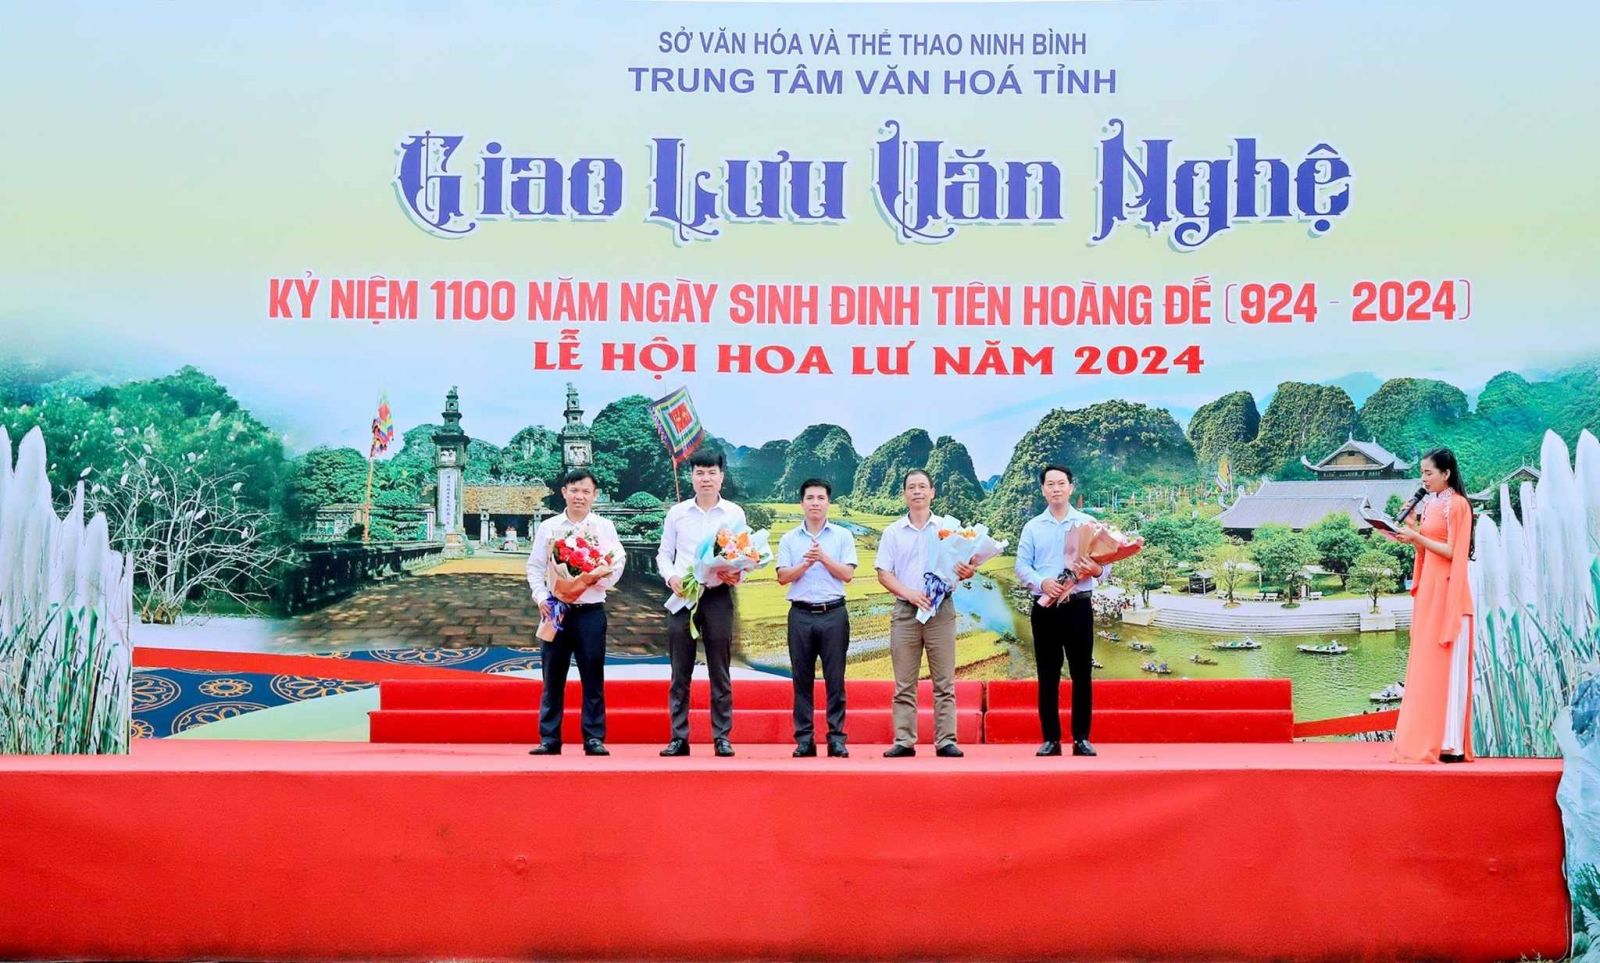 Trung tâm Văn hoá tỉnh Ninh Bình tổ chức chương trình Giao Lưu văn nghệ và Triển lãm ảnh nghệ thuật tại lễ hội Hoa Lư năm 2024.